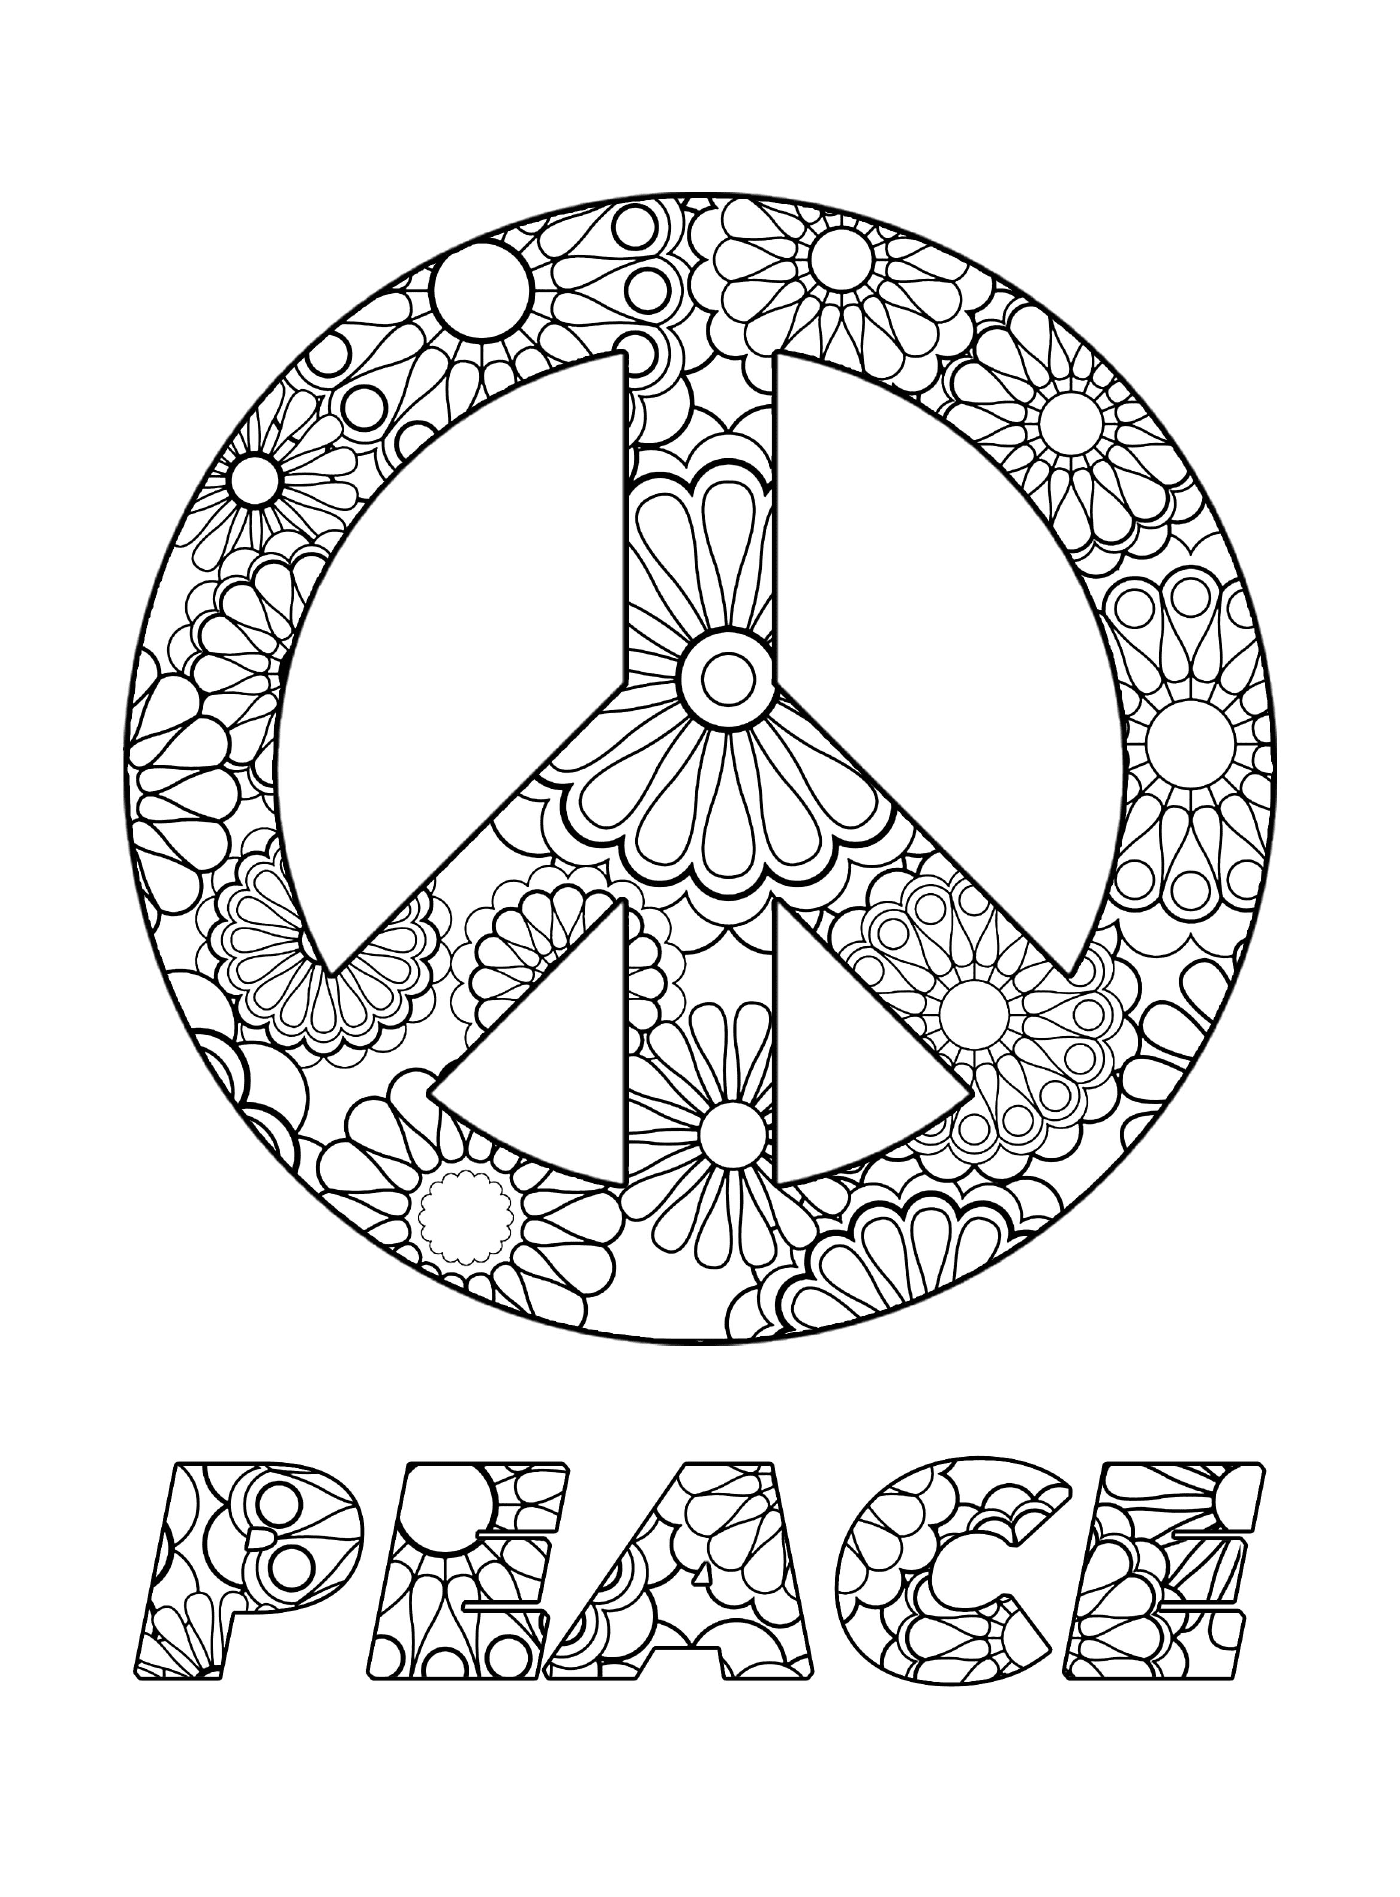  Símbolo da paz com flores 